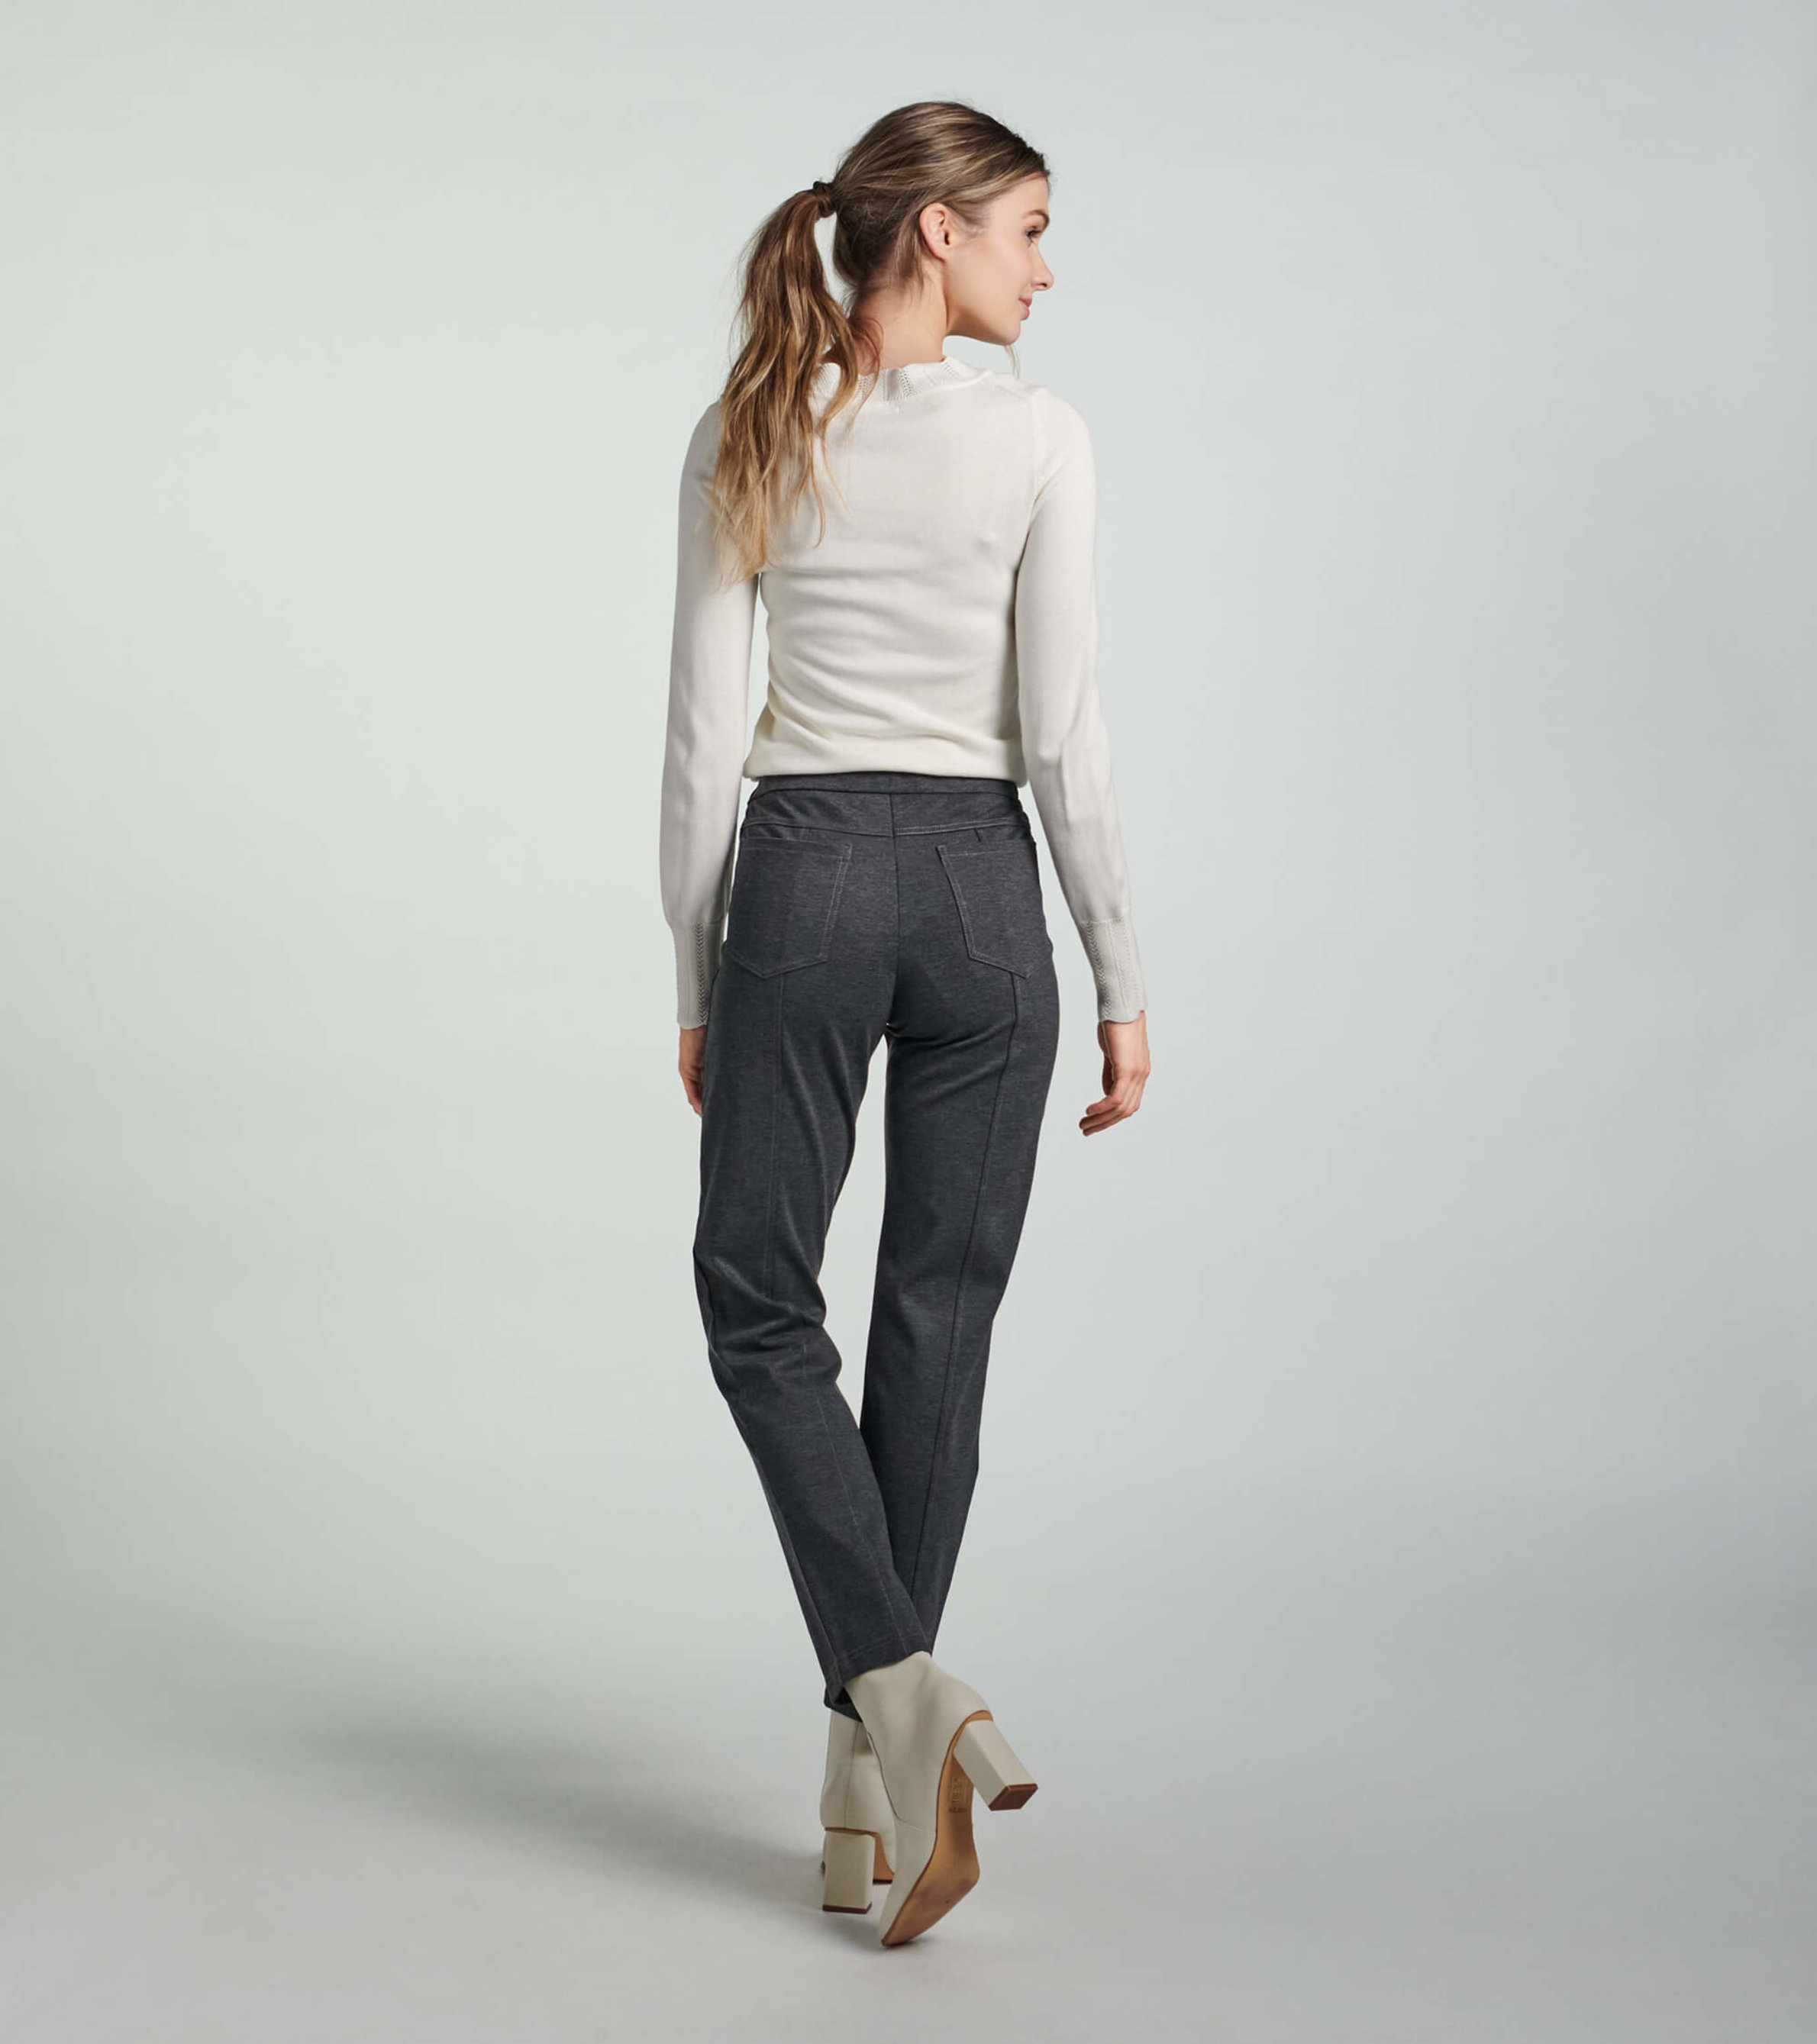 Anne Klein Women Size Small, Tummy Control Ponte Pants, Charcoal Gray